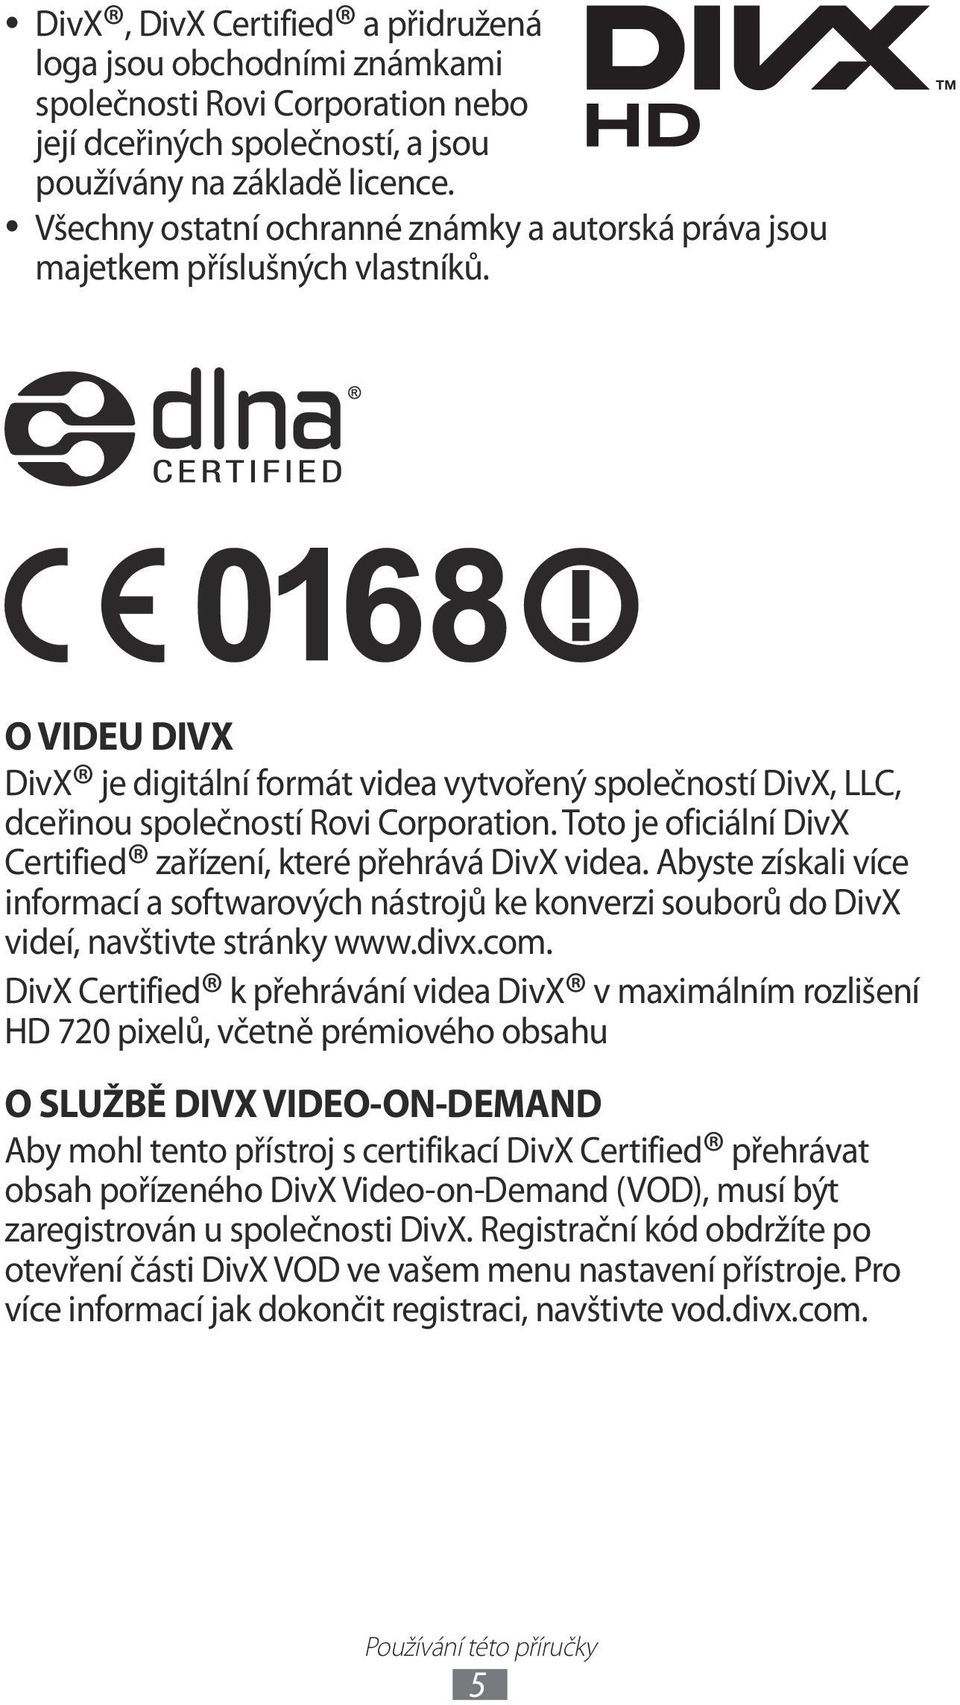 O VIDEU DIVX DivX je digitální formát videa vytvořený společností DivX, LLC, dceřinou společností Rovi Corporation. Toto je oficiální DivX Certified zařízení, které přehrává DivX videa.